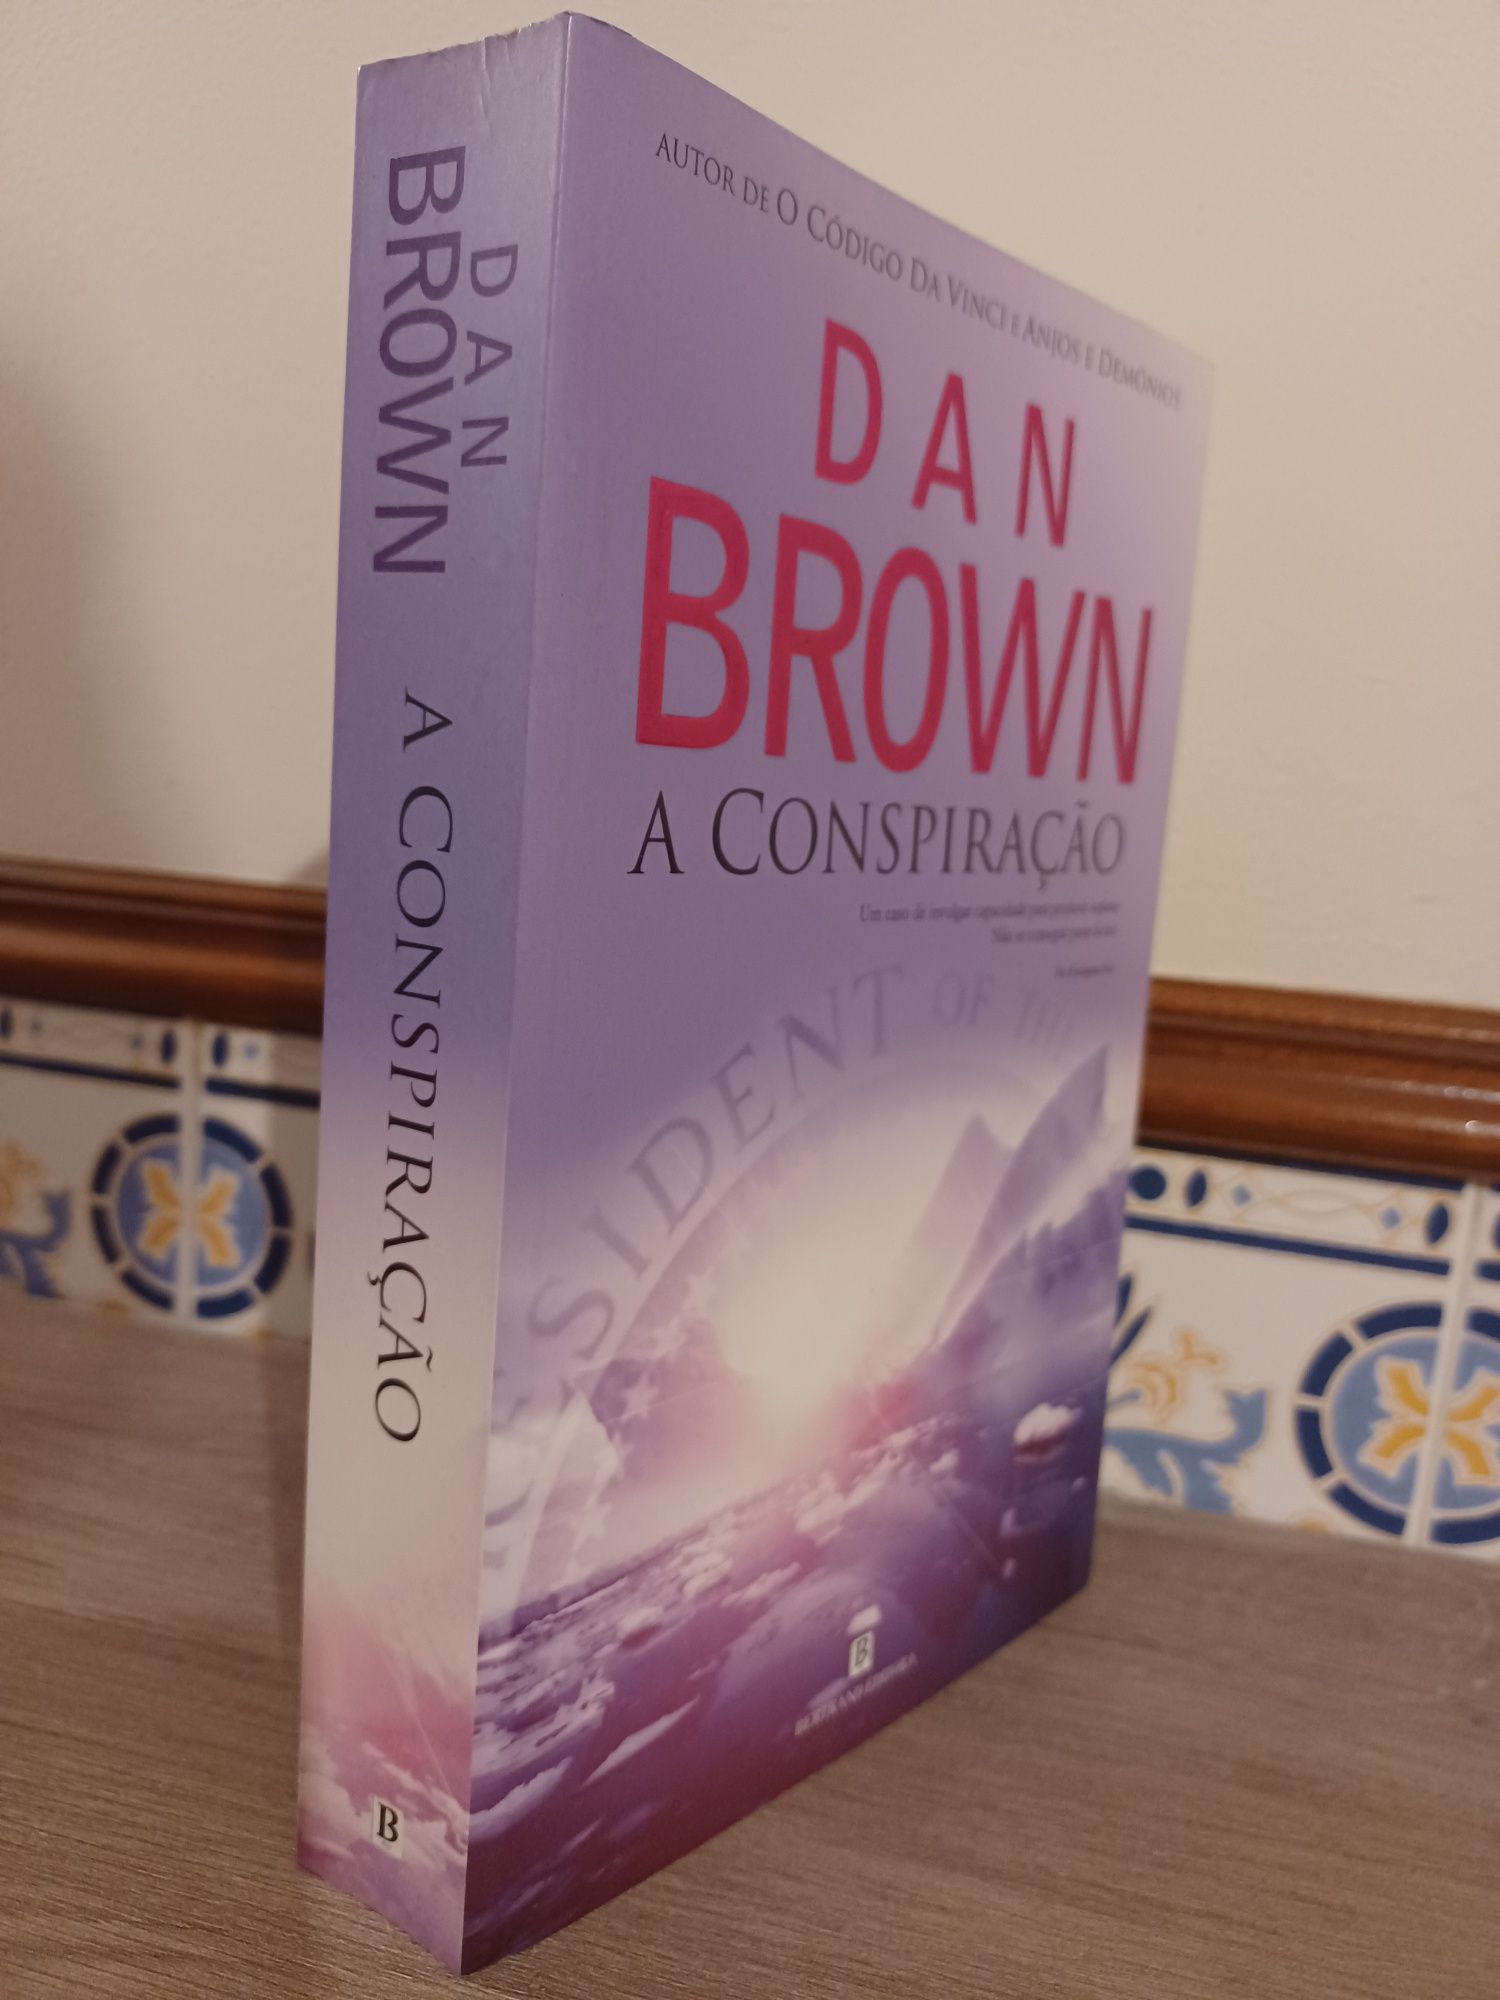 "A Conspiração" livro de Dan Brown